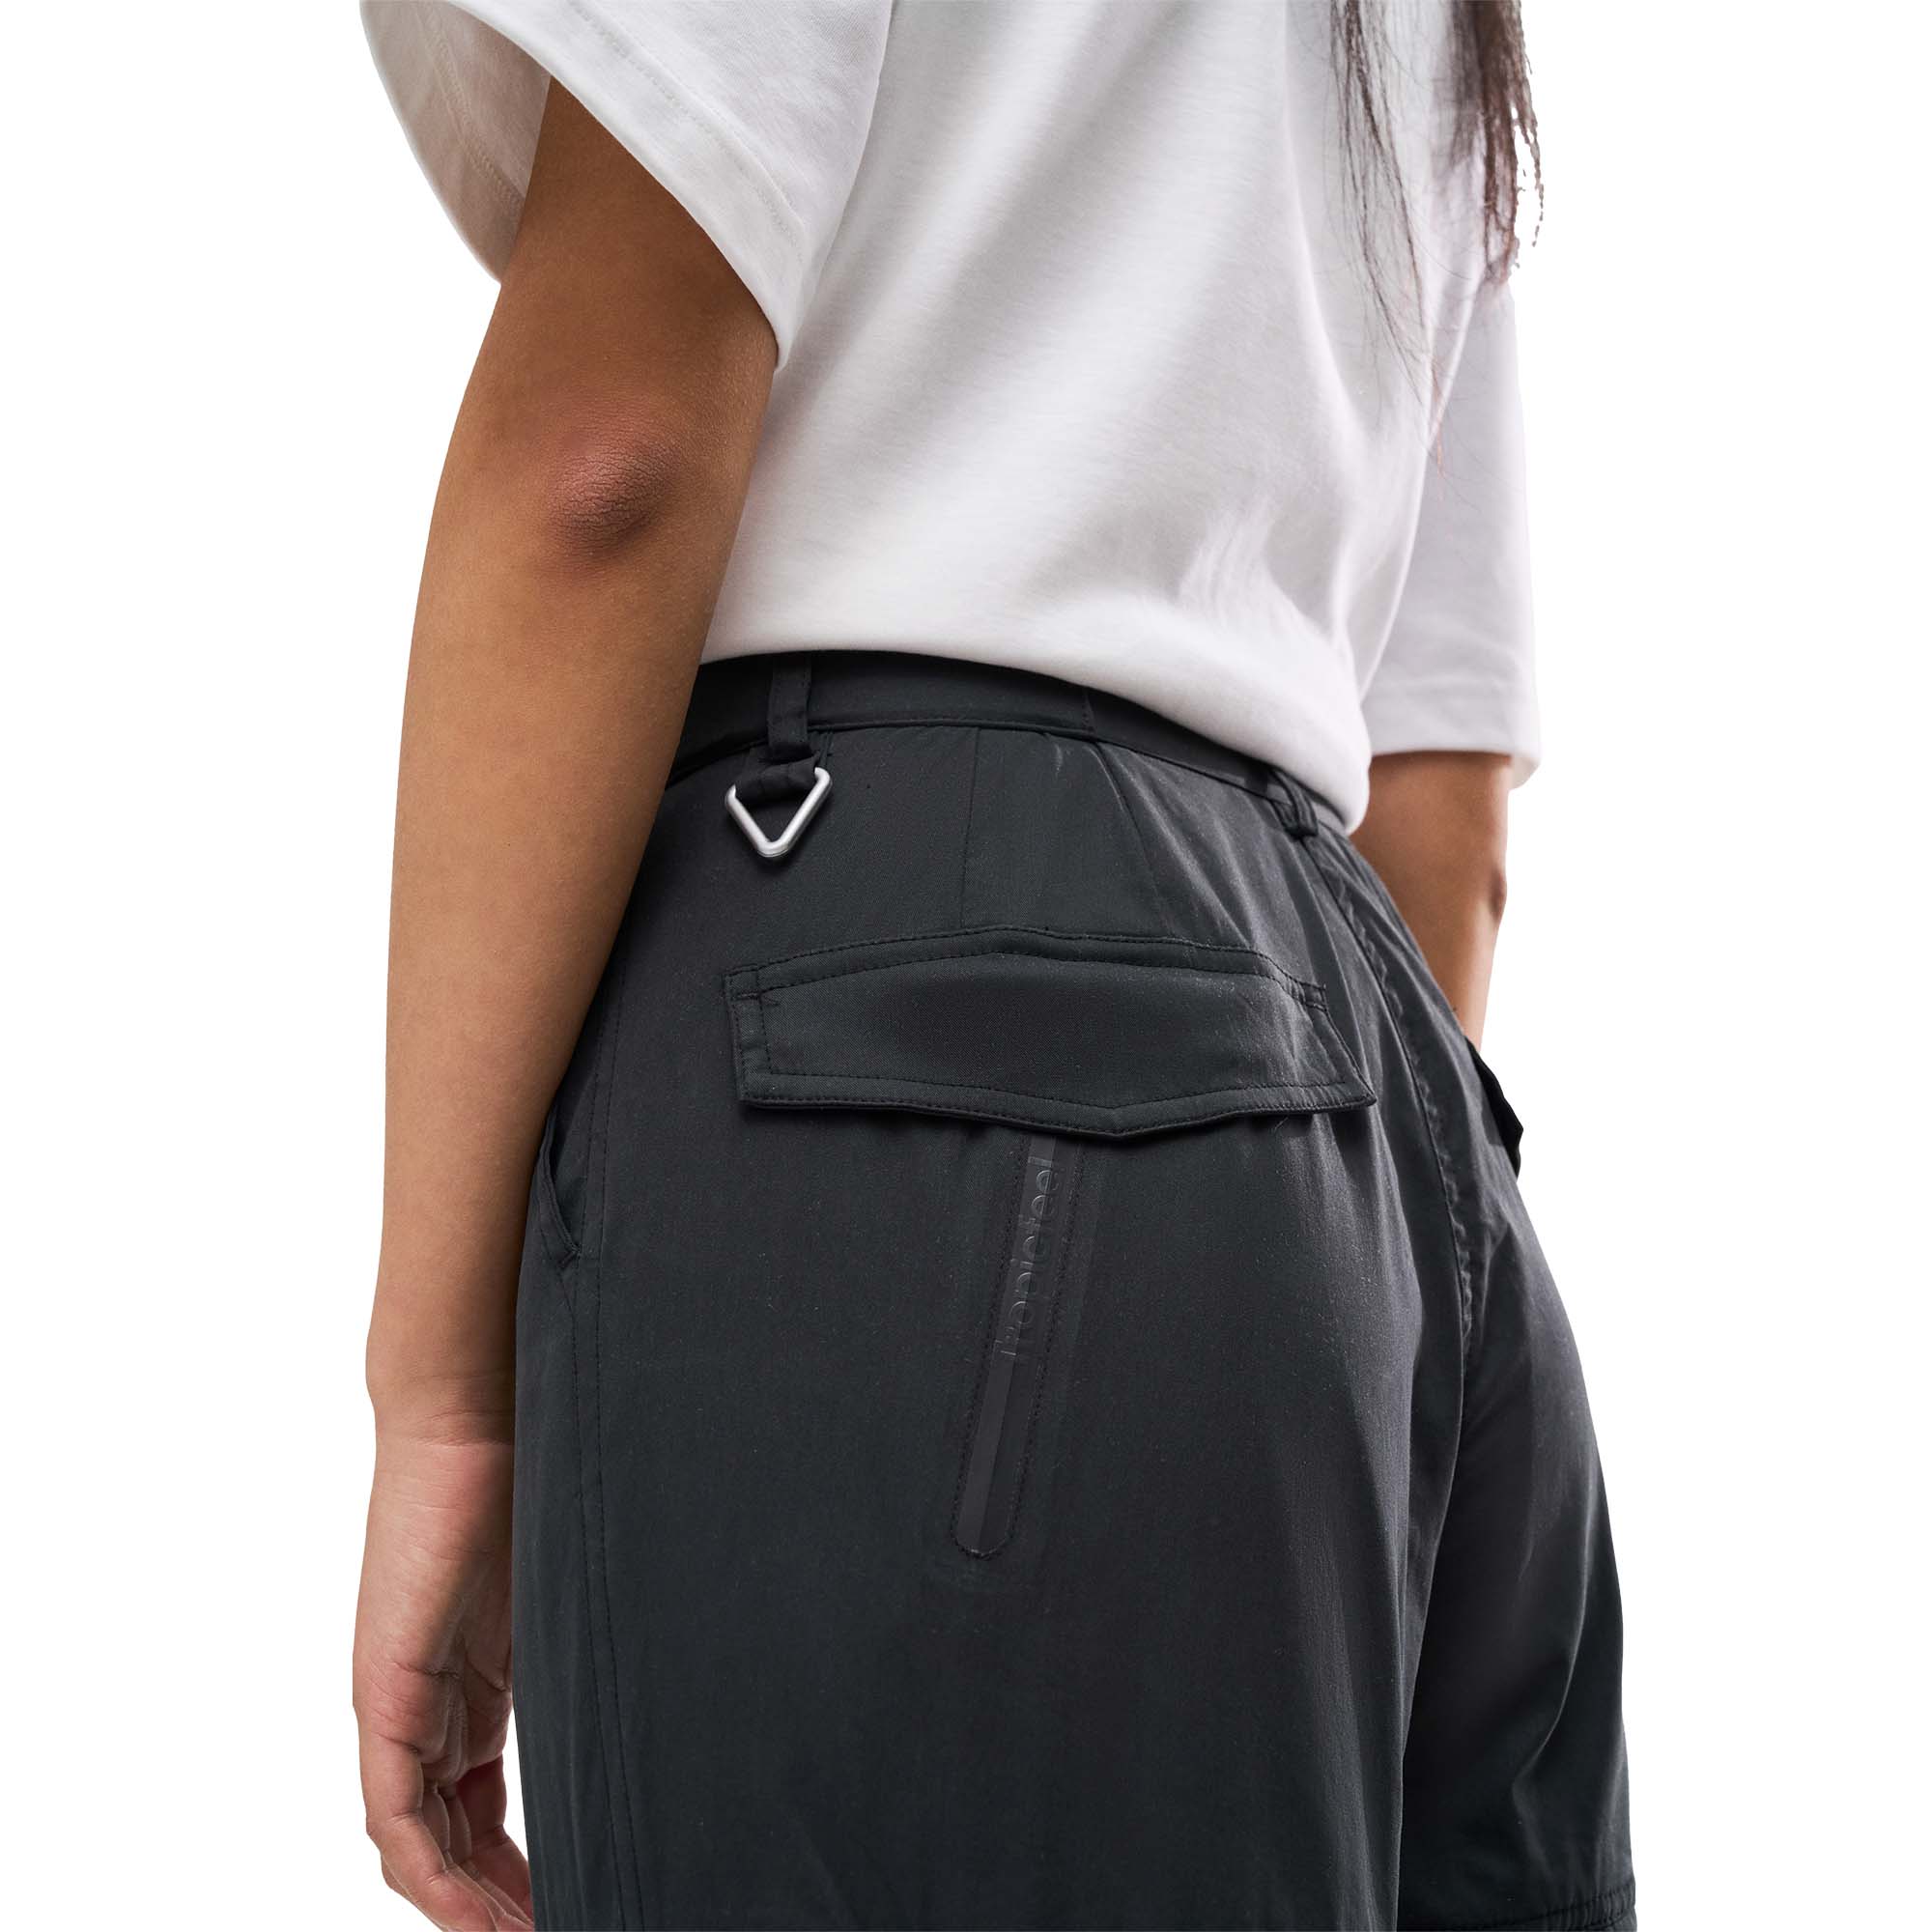 Tropicfeel ProTravel Zip-Off Pant Women's 2-in-1 Trousers/Shorts